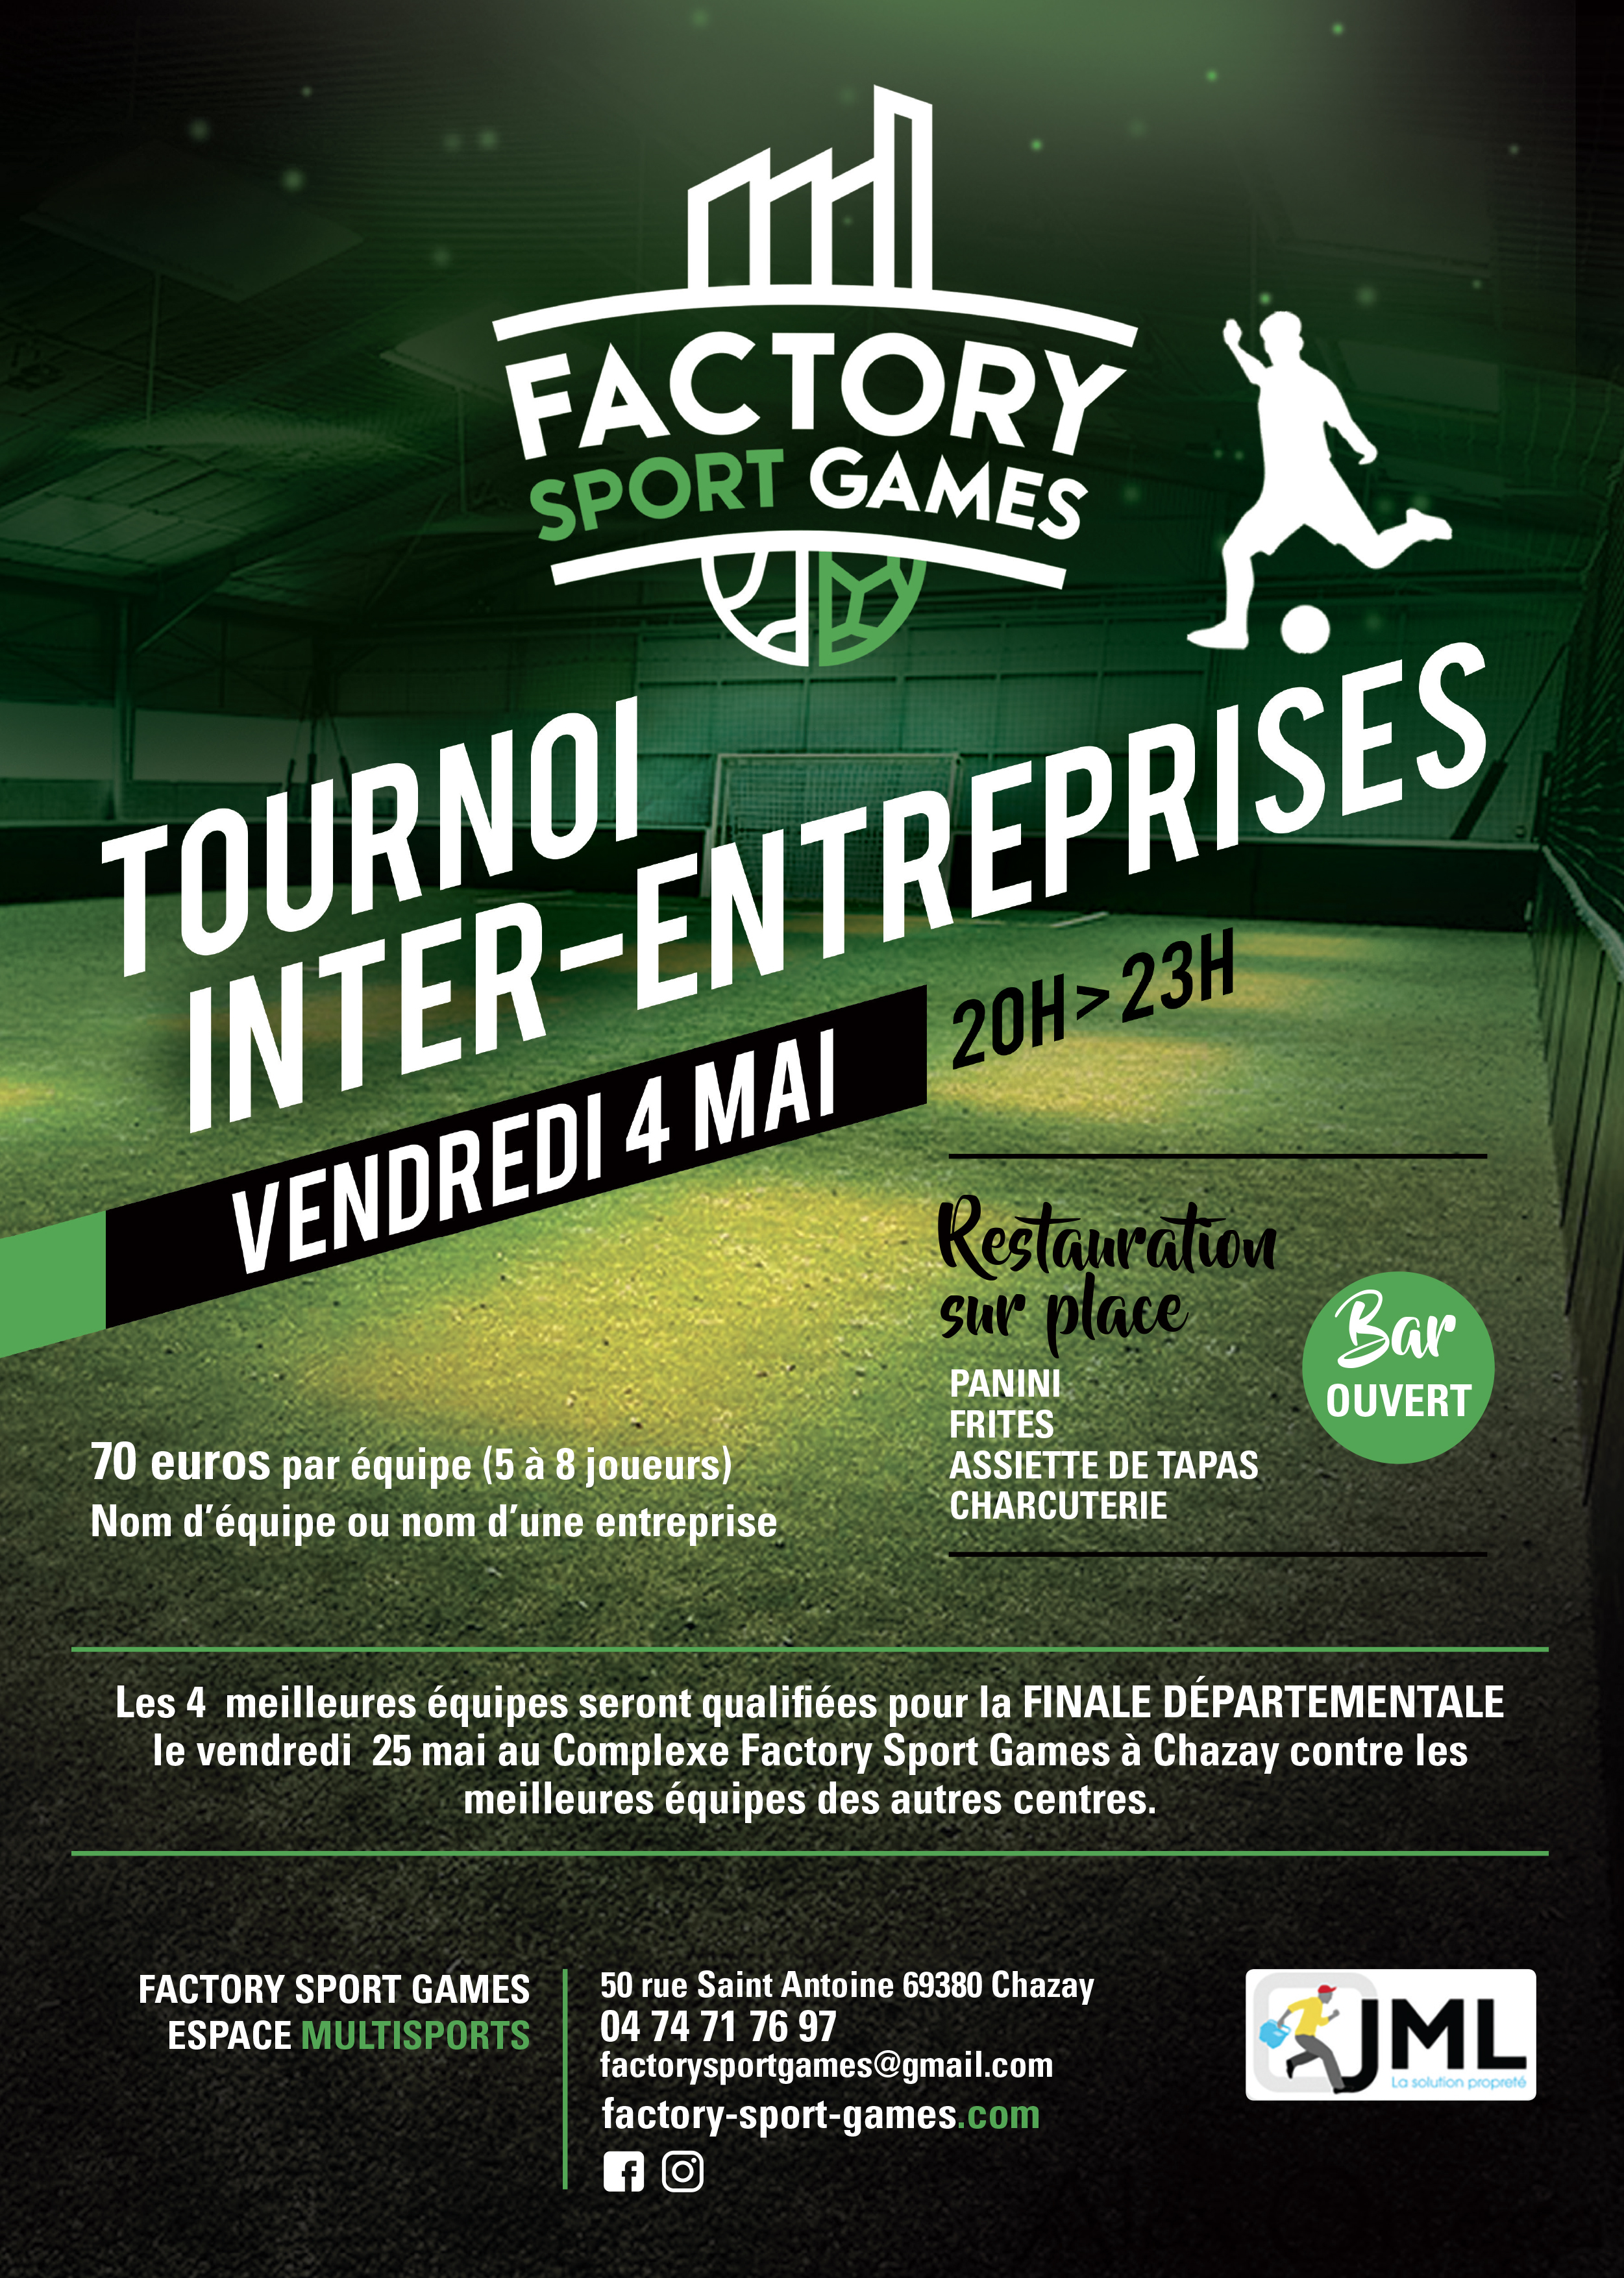 Ligue JML Entreprises - Rendez vous le 4 mai au Factory Sport Games de Chazay !